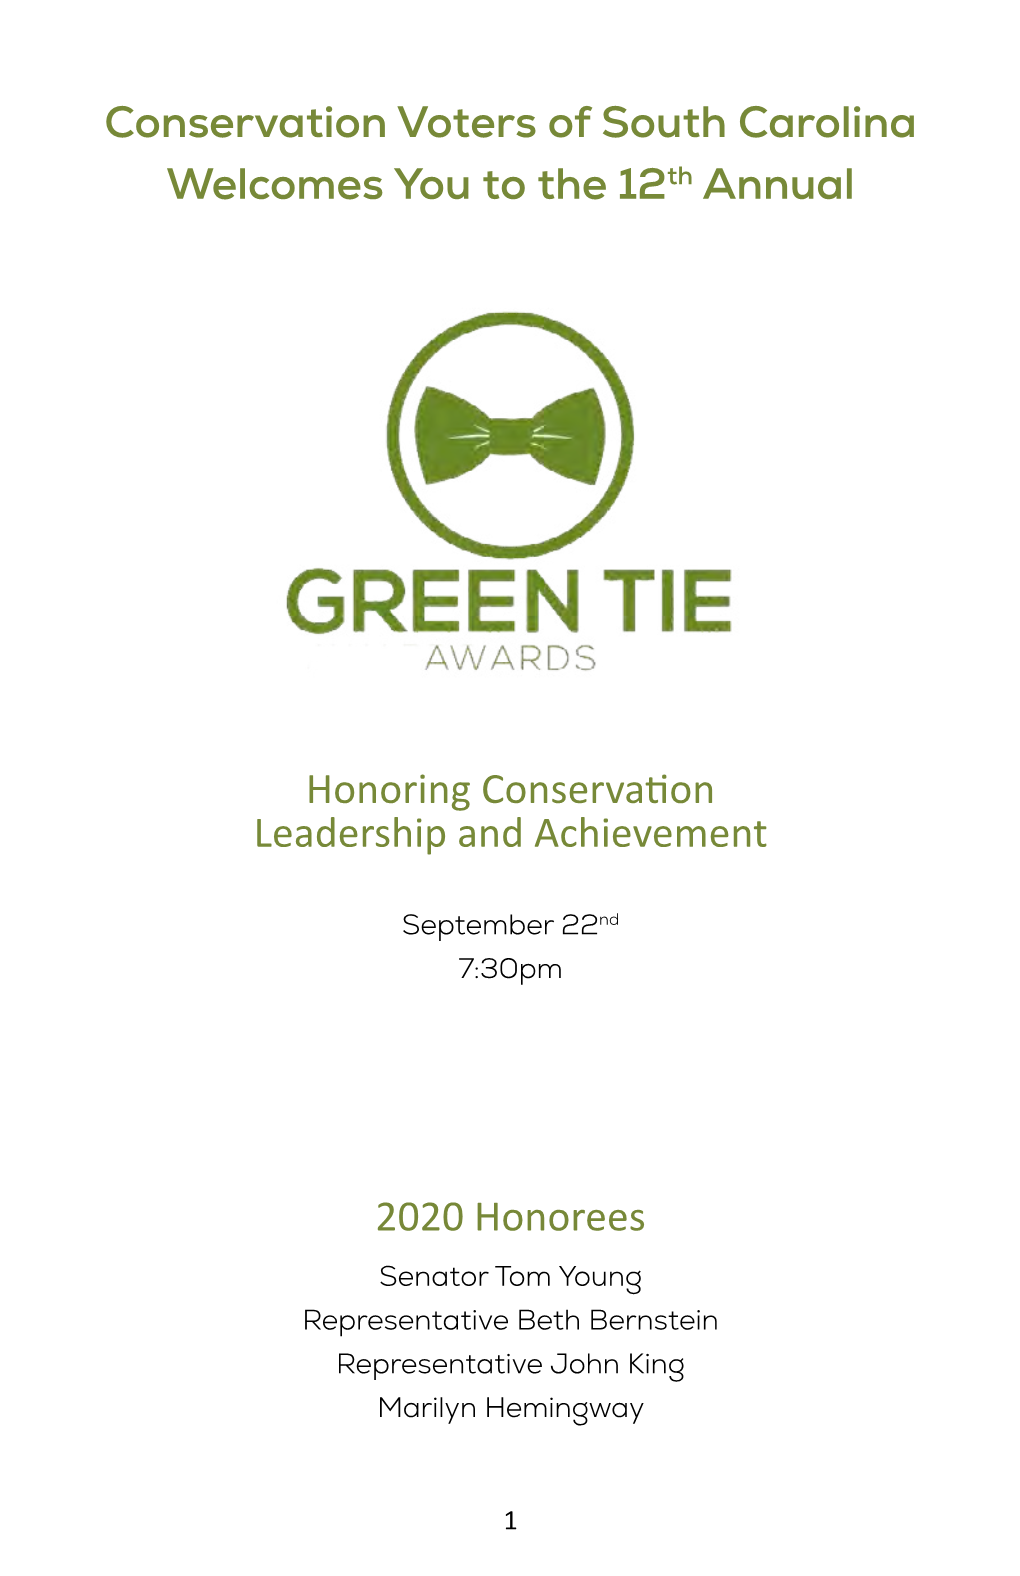 2020 Green Tie Awards Program